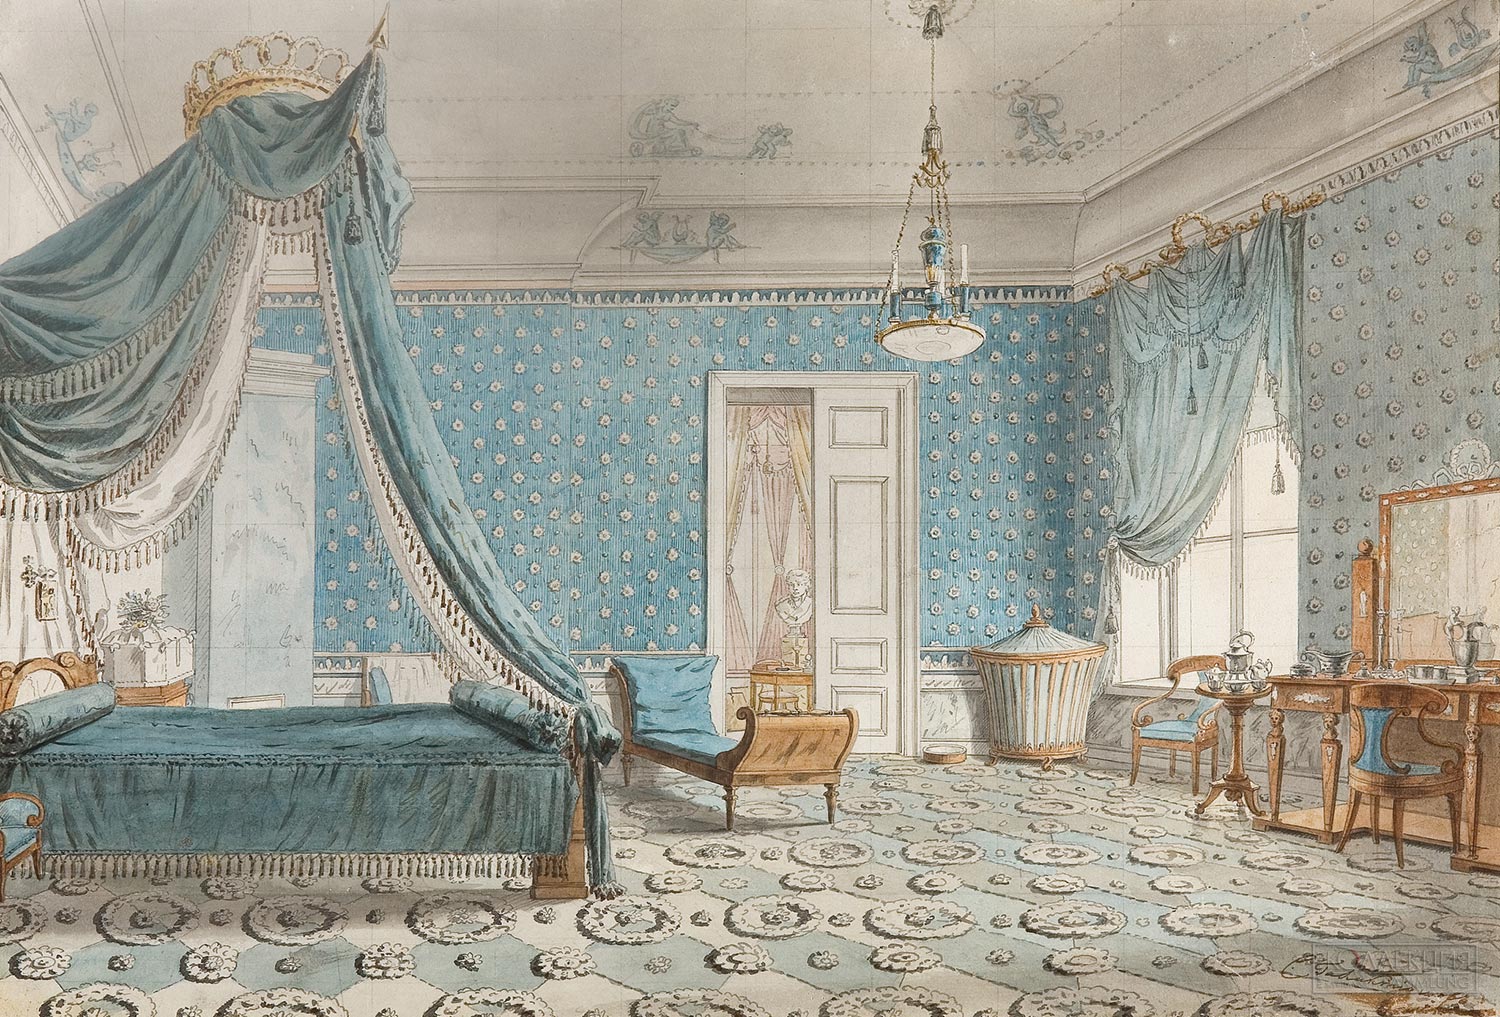 Галактионов С.Ф. 1778-1854. Голубая спальня. Первая треть XIX века. ГТГ